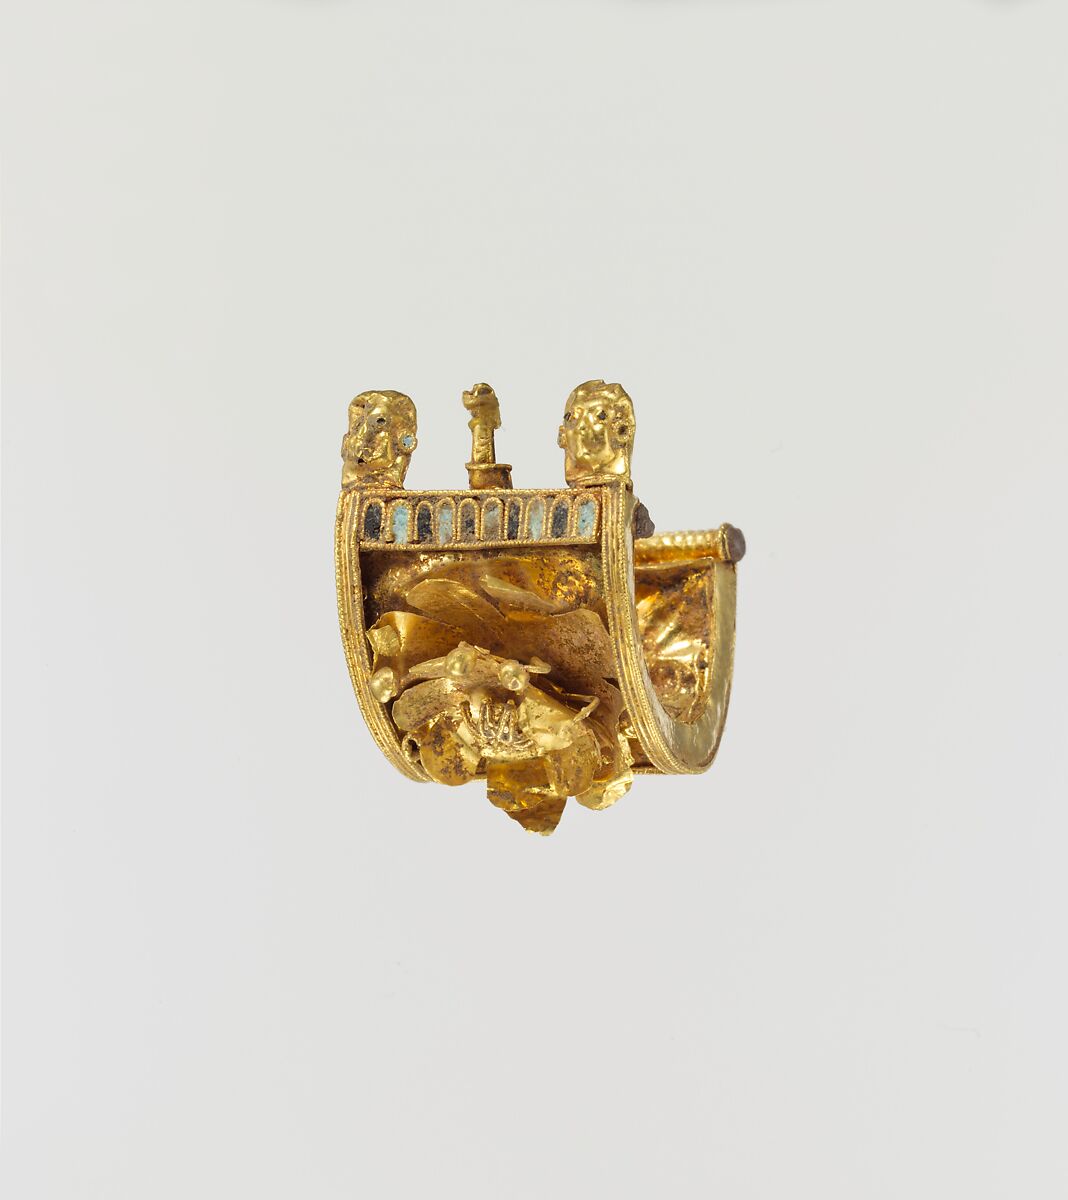 Gold and enamel a baule earring